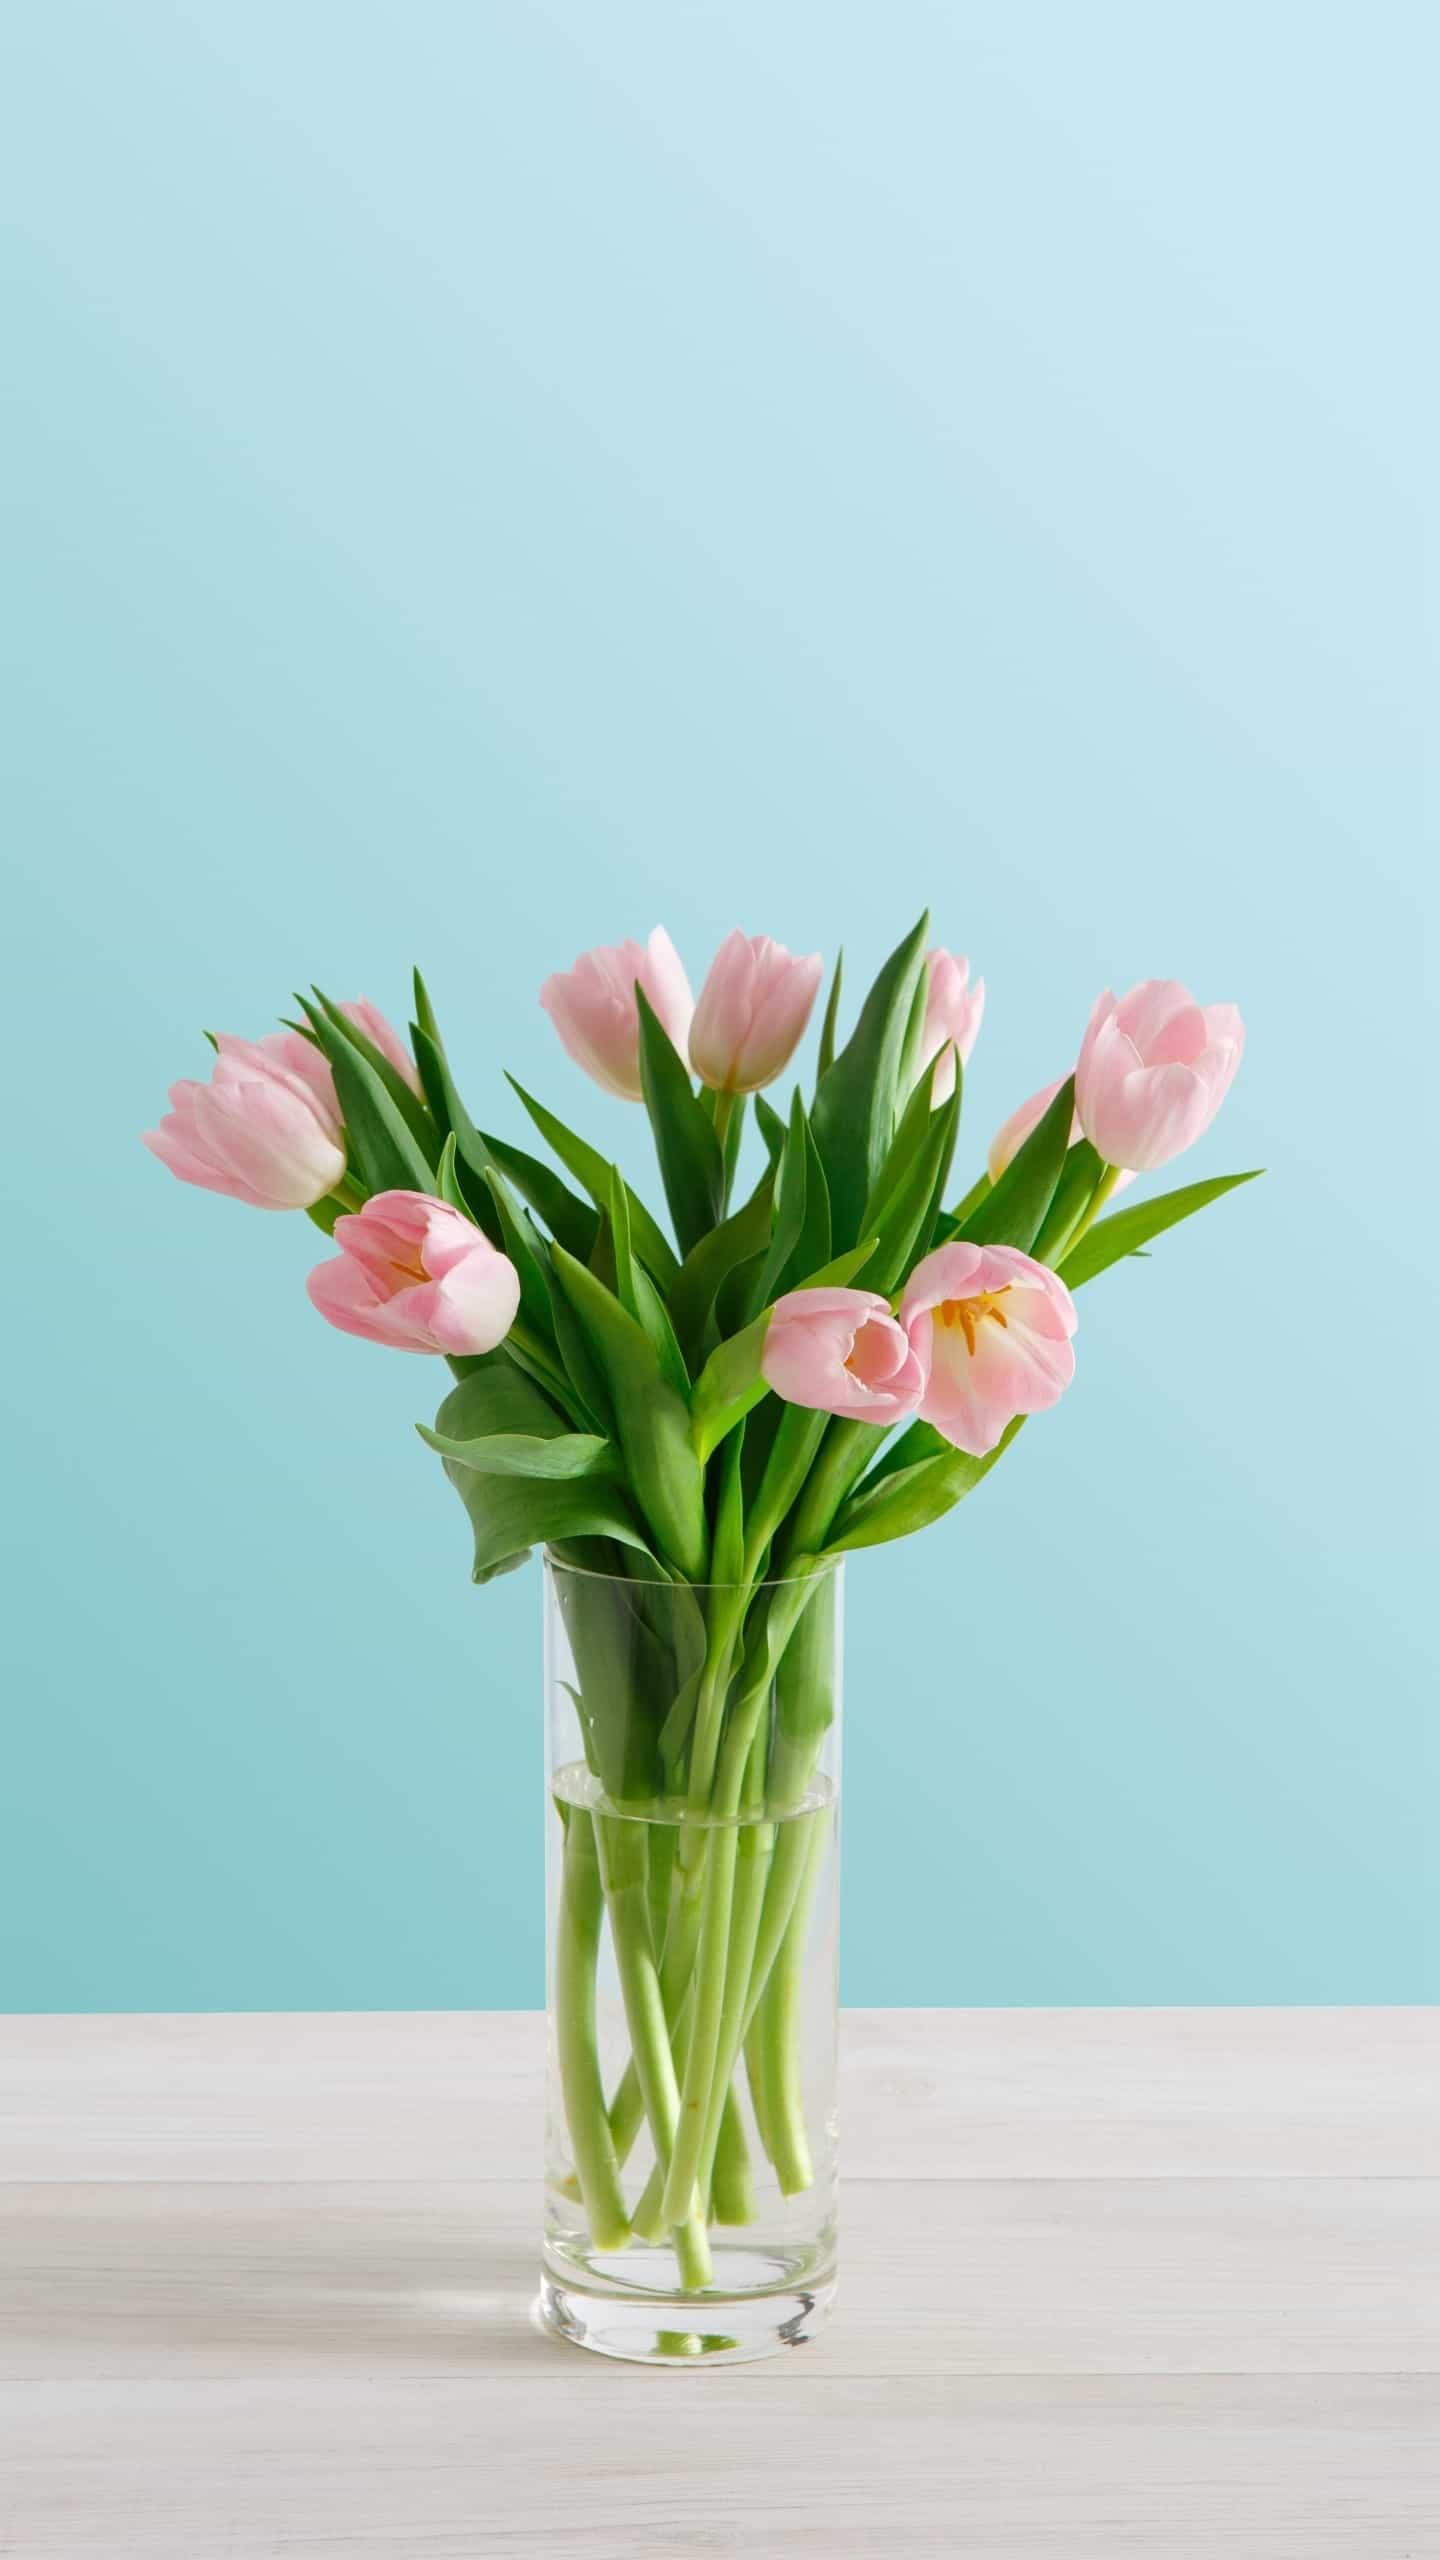 荷兰的国花郁金香,有很多种不同的花语